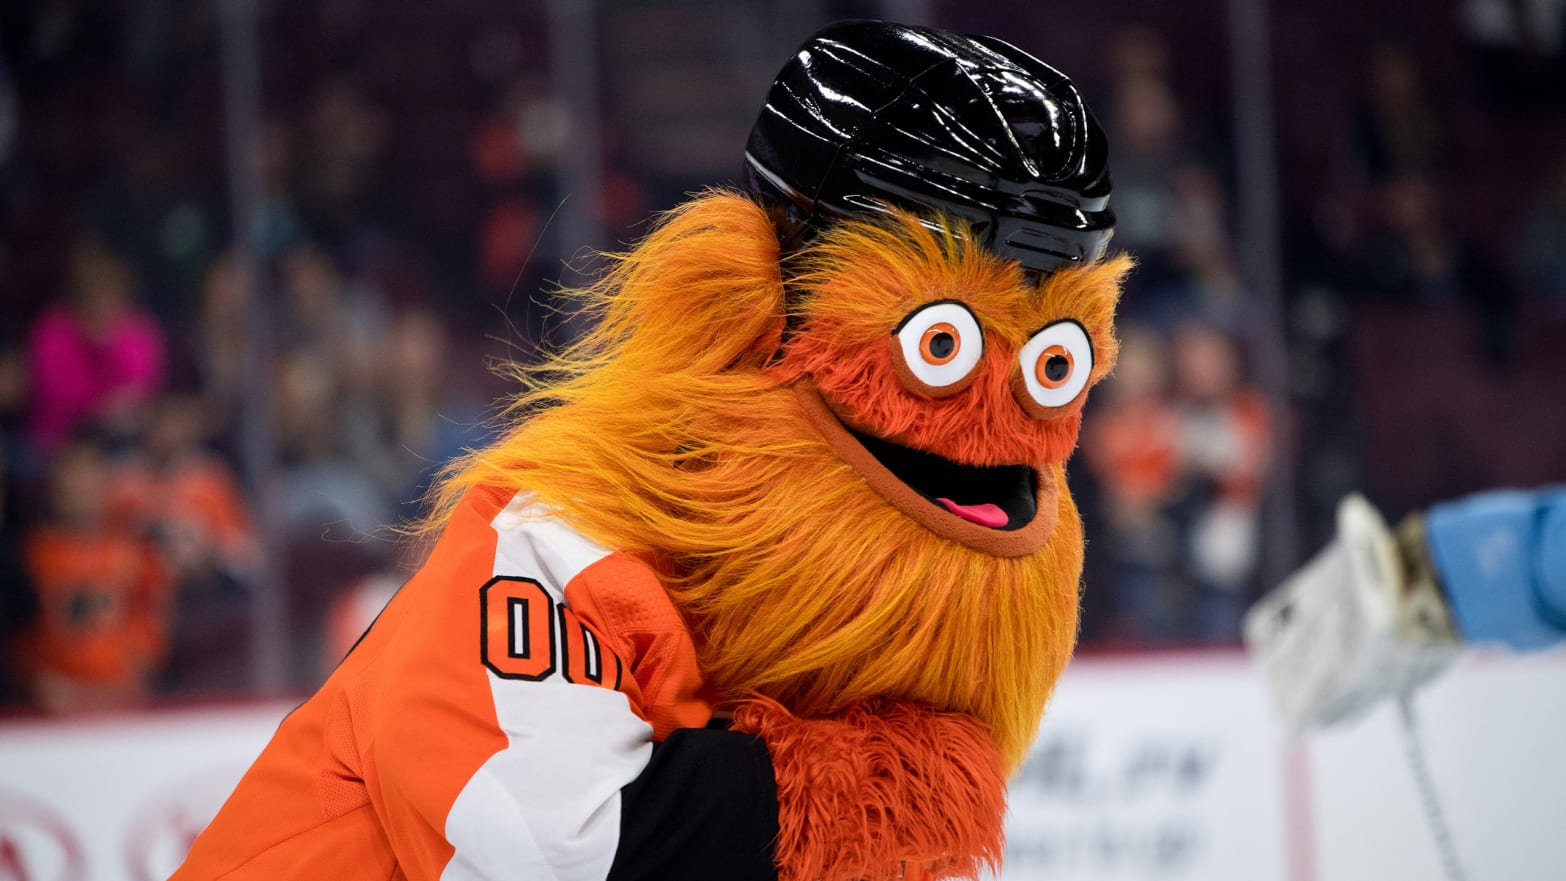 Philadelphia Flyers ride the coattails of social media sensation